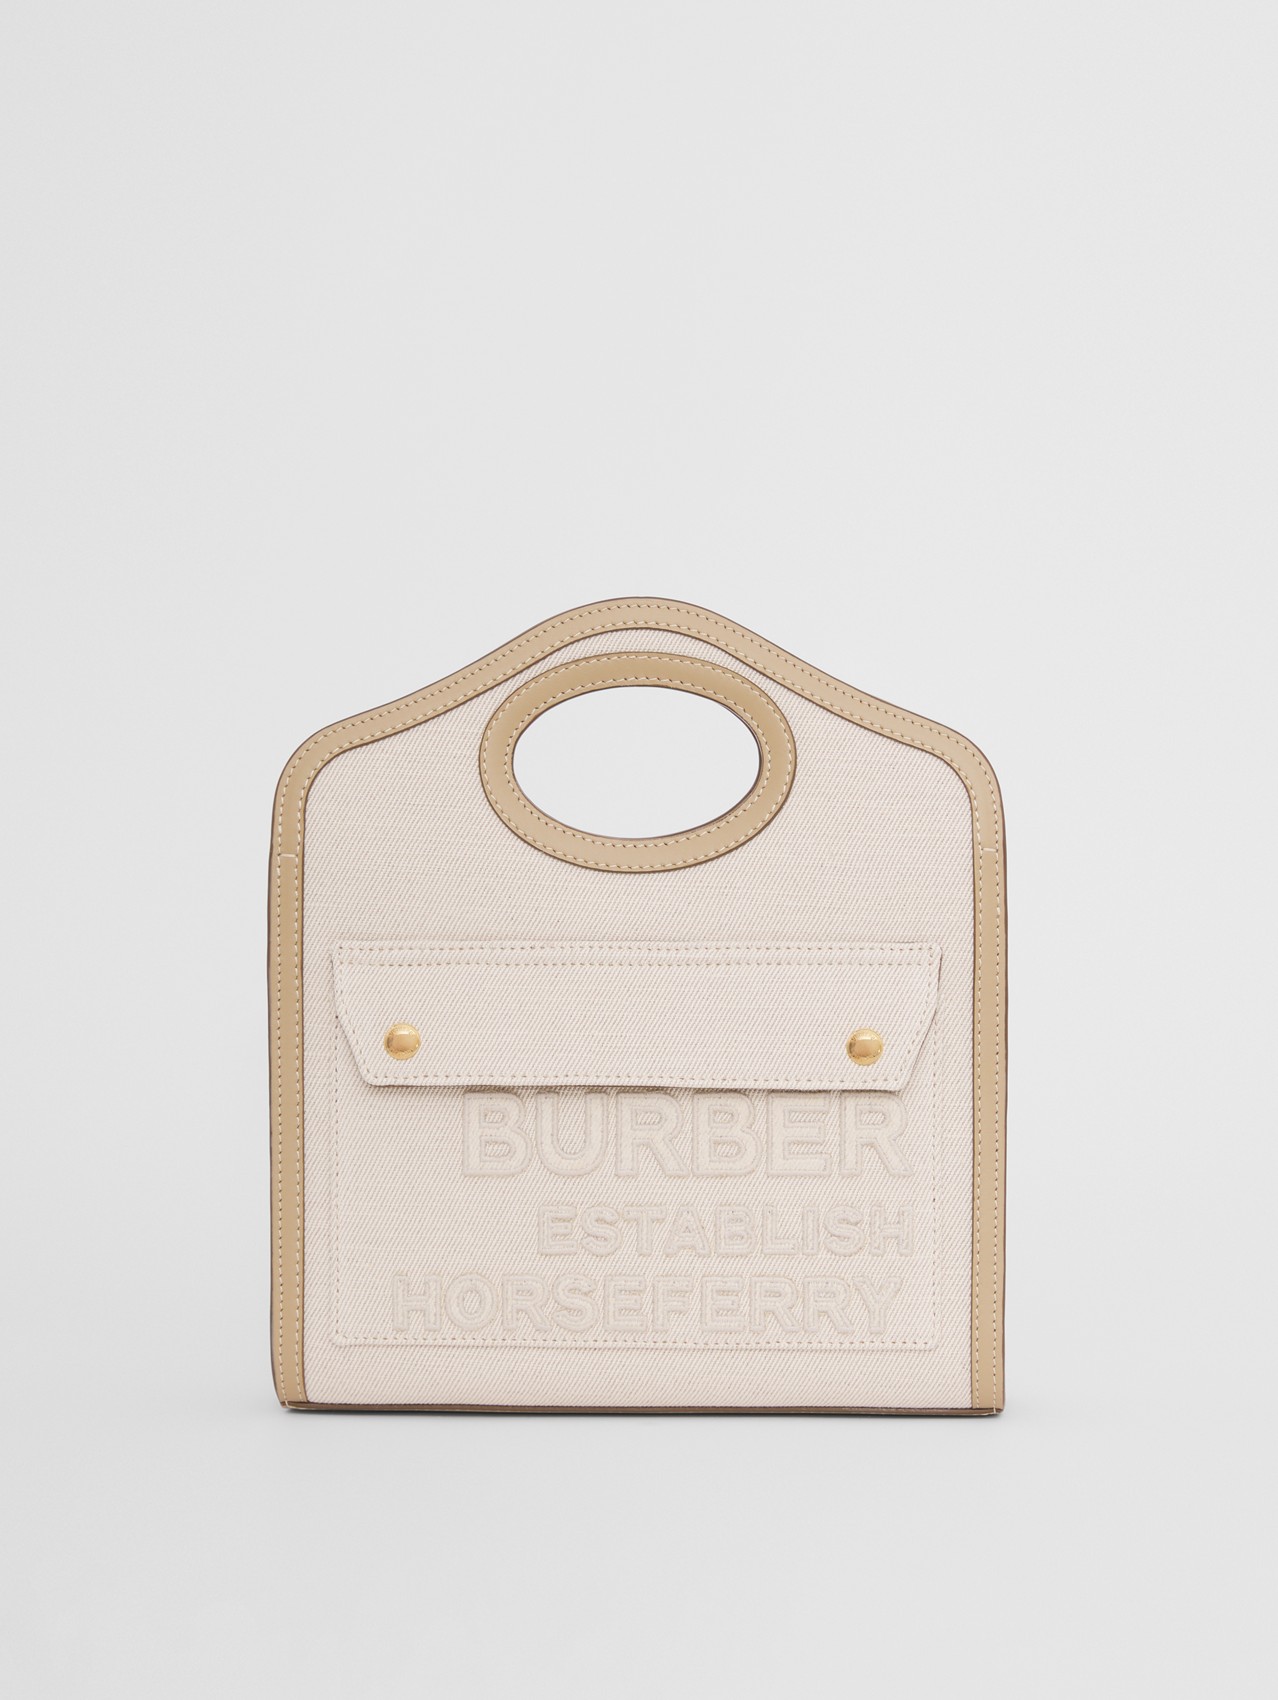 Pocket Bag im Miniformat aus Leinen und Baumwollcanvas mit Horseferry-Schriftzug (Wollweiß)